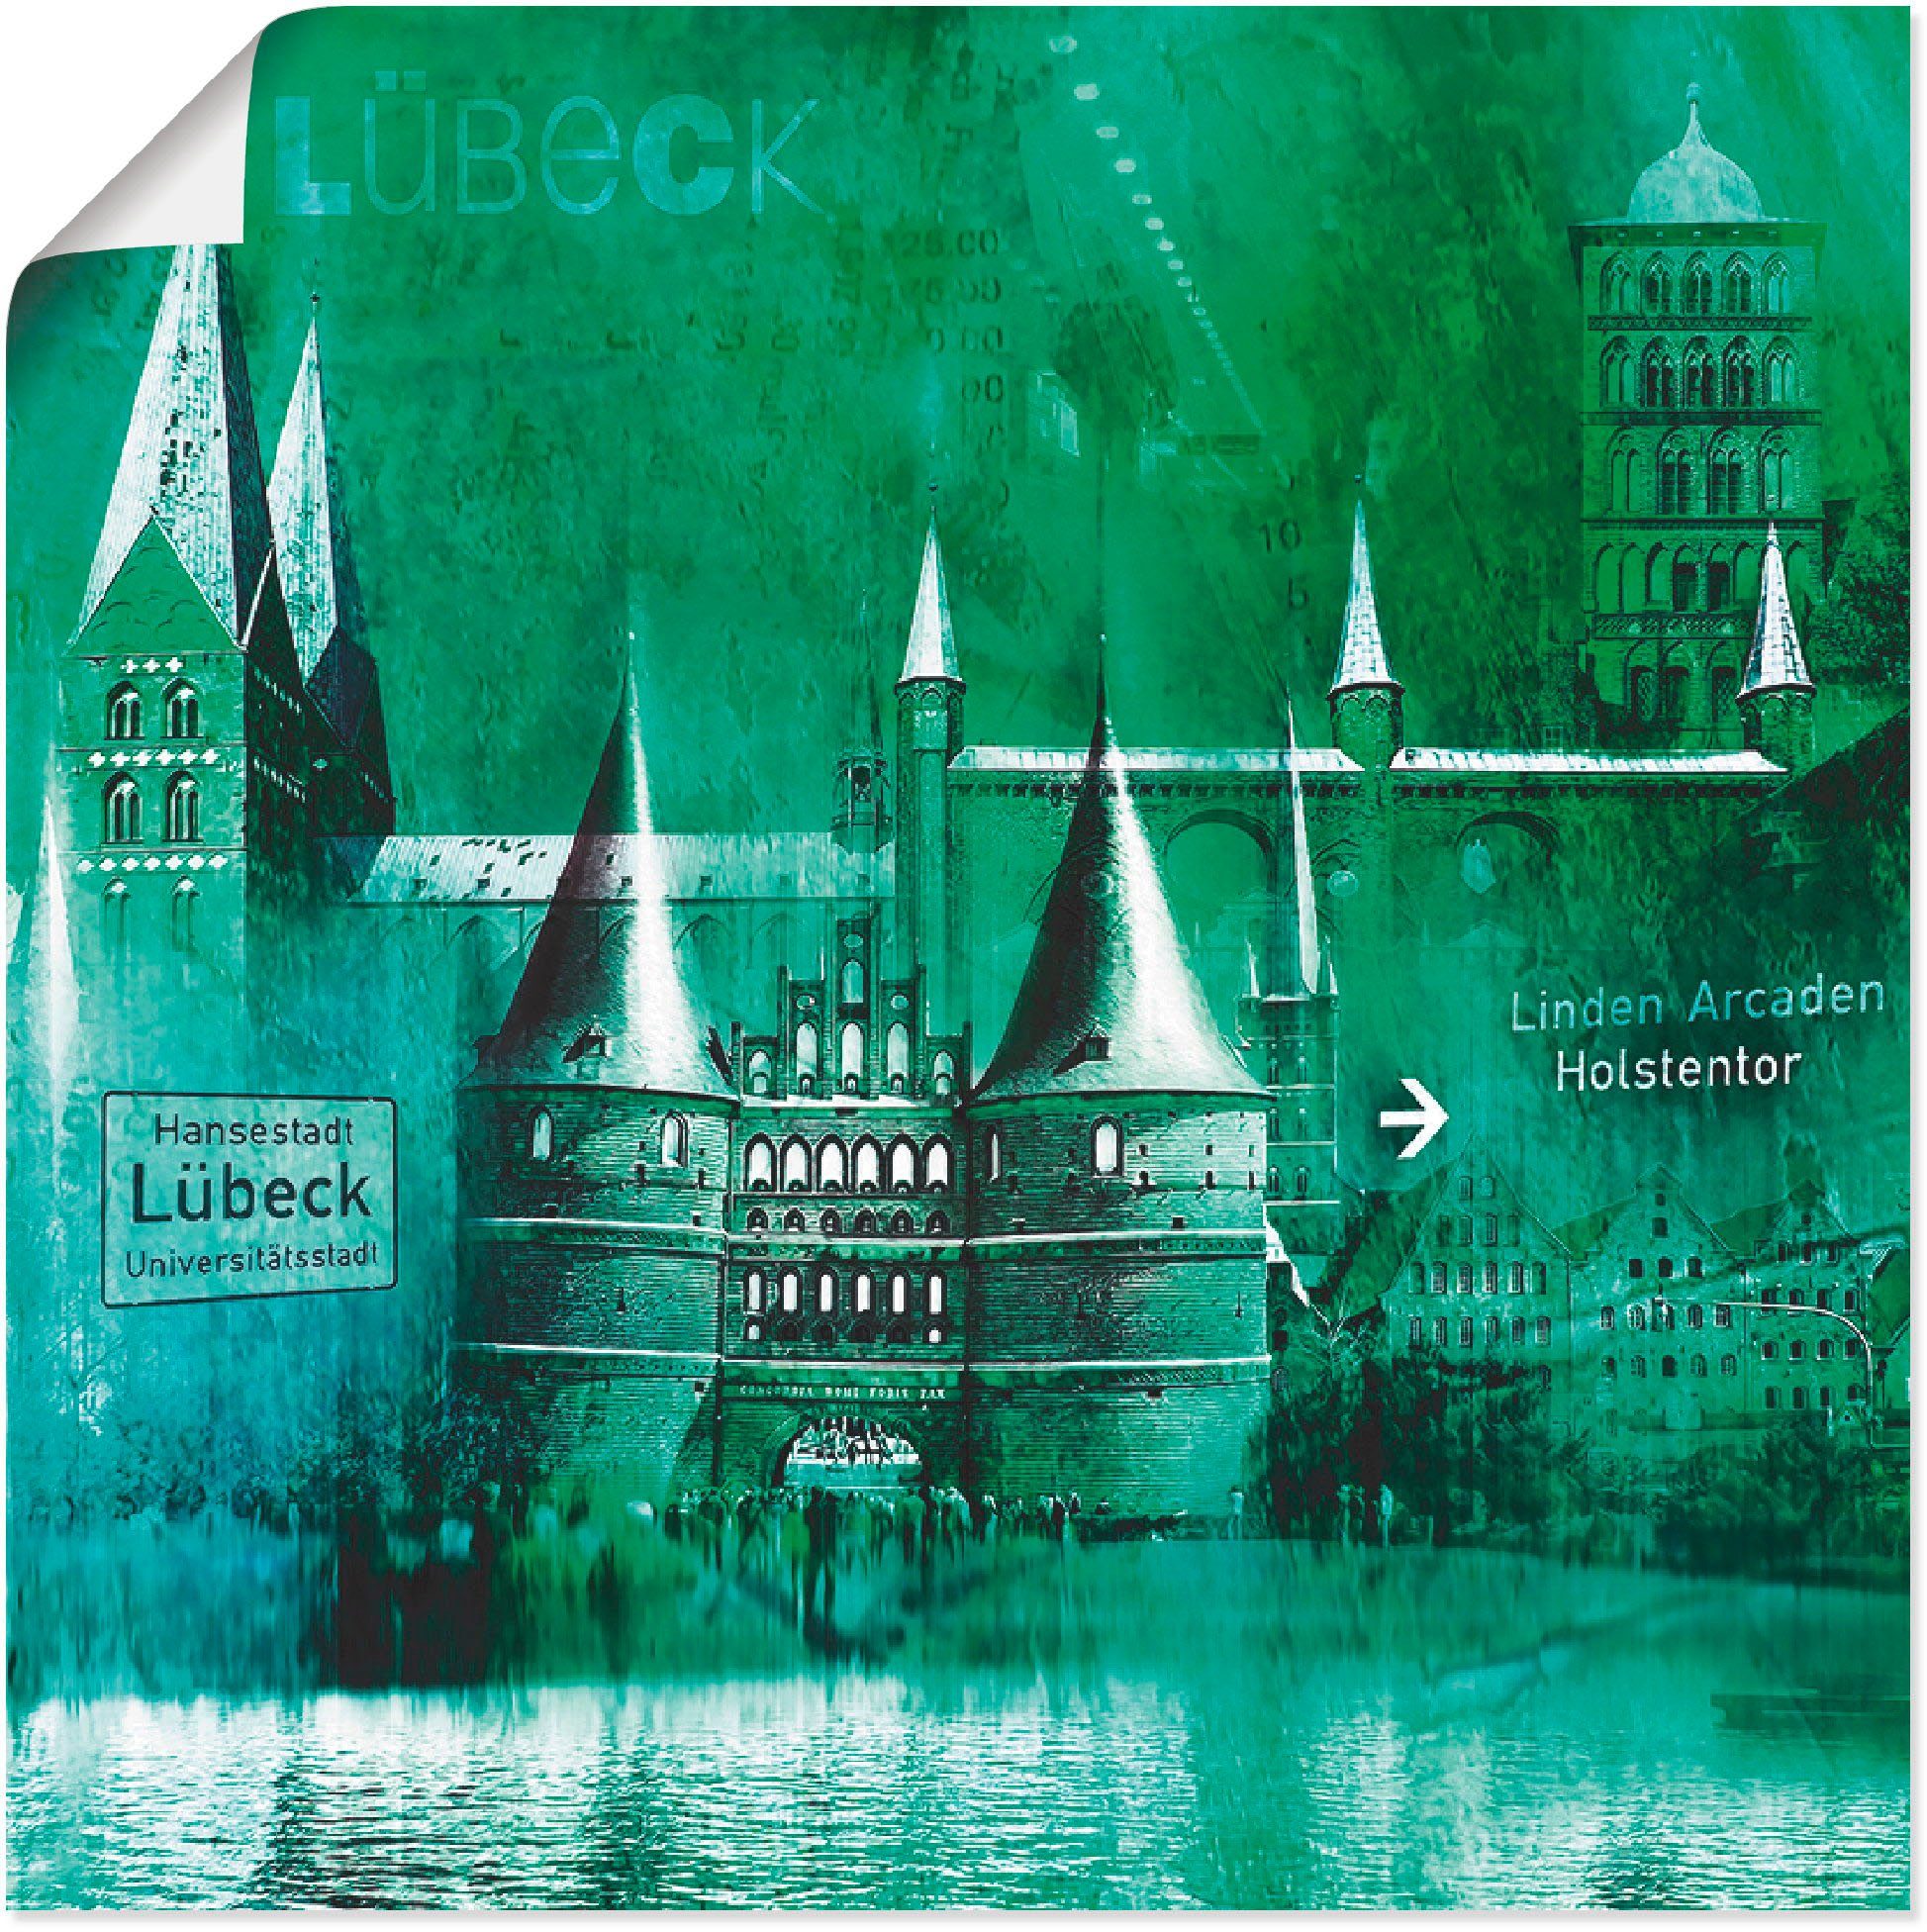 Artland Artprint Lübeck Hanzestad collage 05 in vele afmetingen & productsoorten -artprint op linnen, poster, muursticker / wandfolie ook geschikt voor de badkamer (1 stuk)